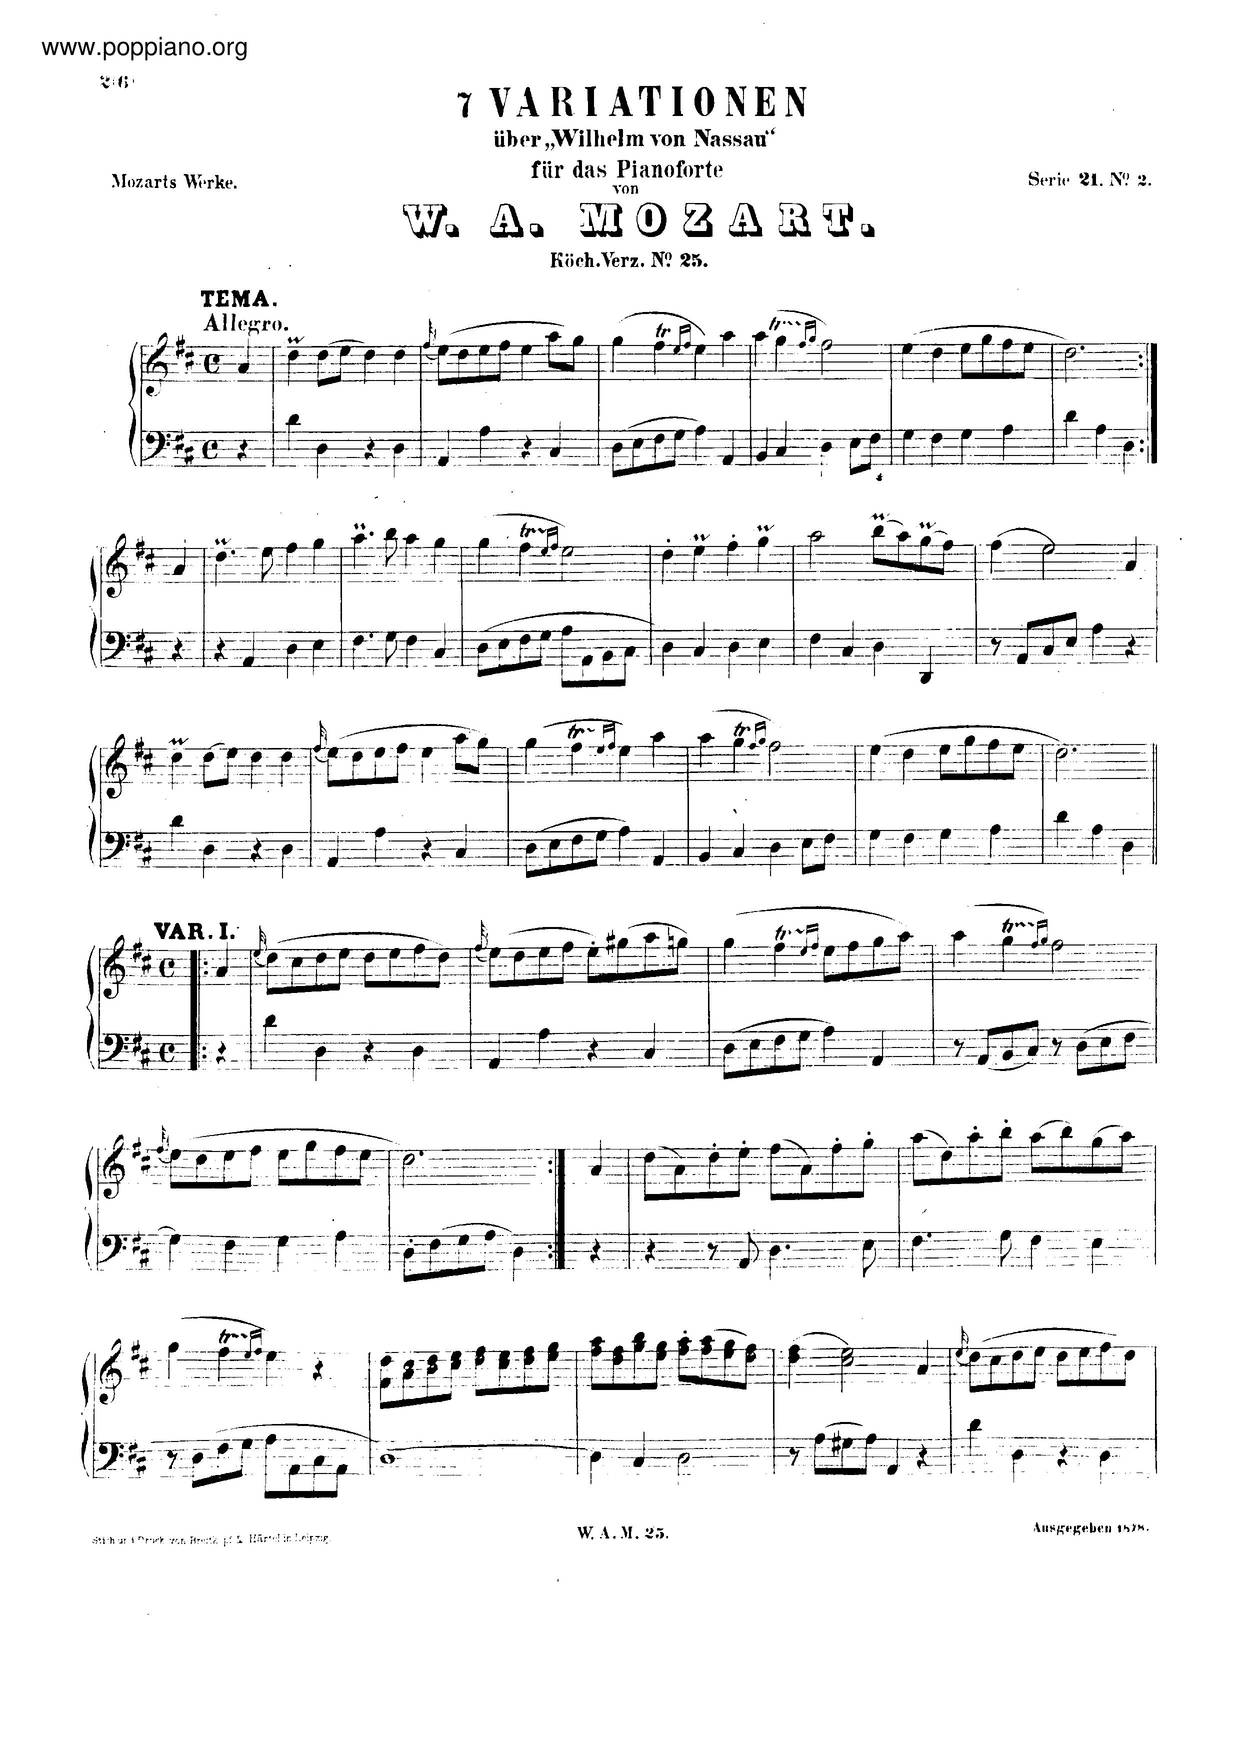 7 Variations On Willem Von Nassau, K. 25 Score